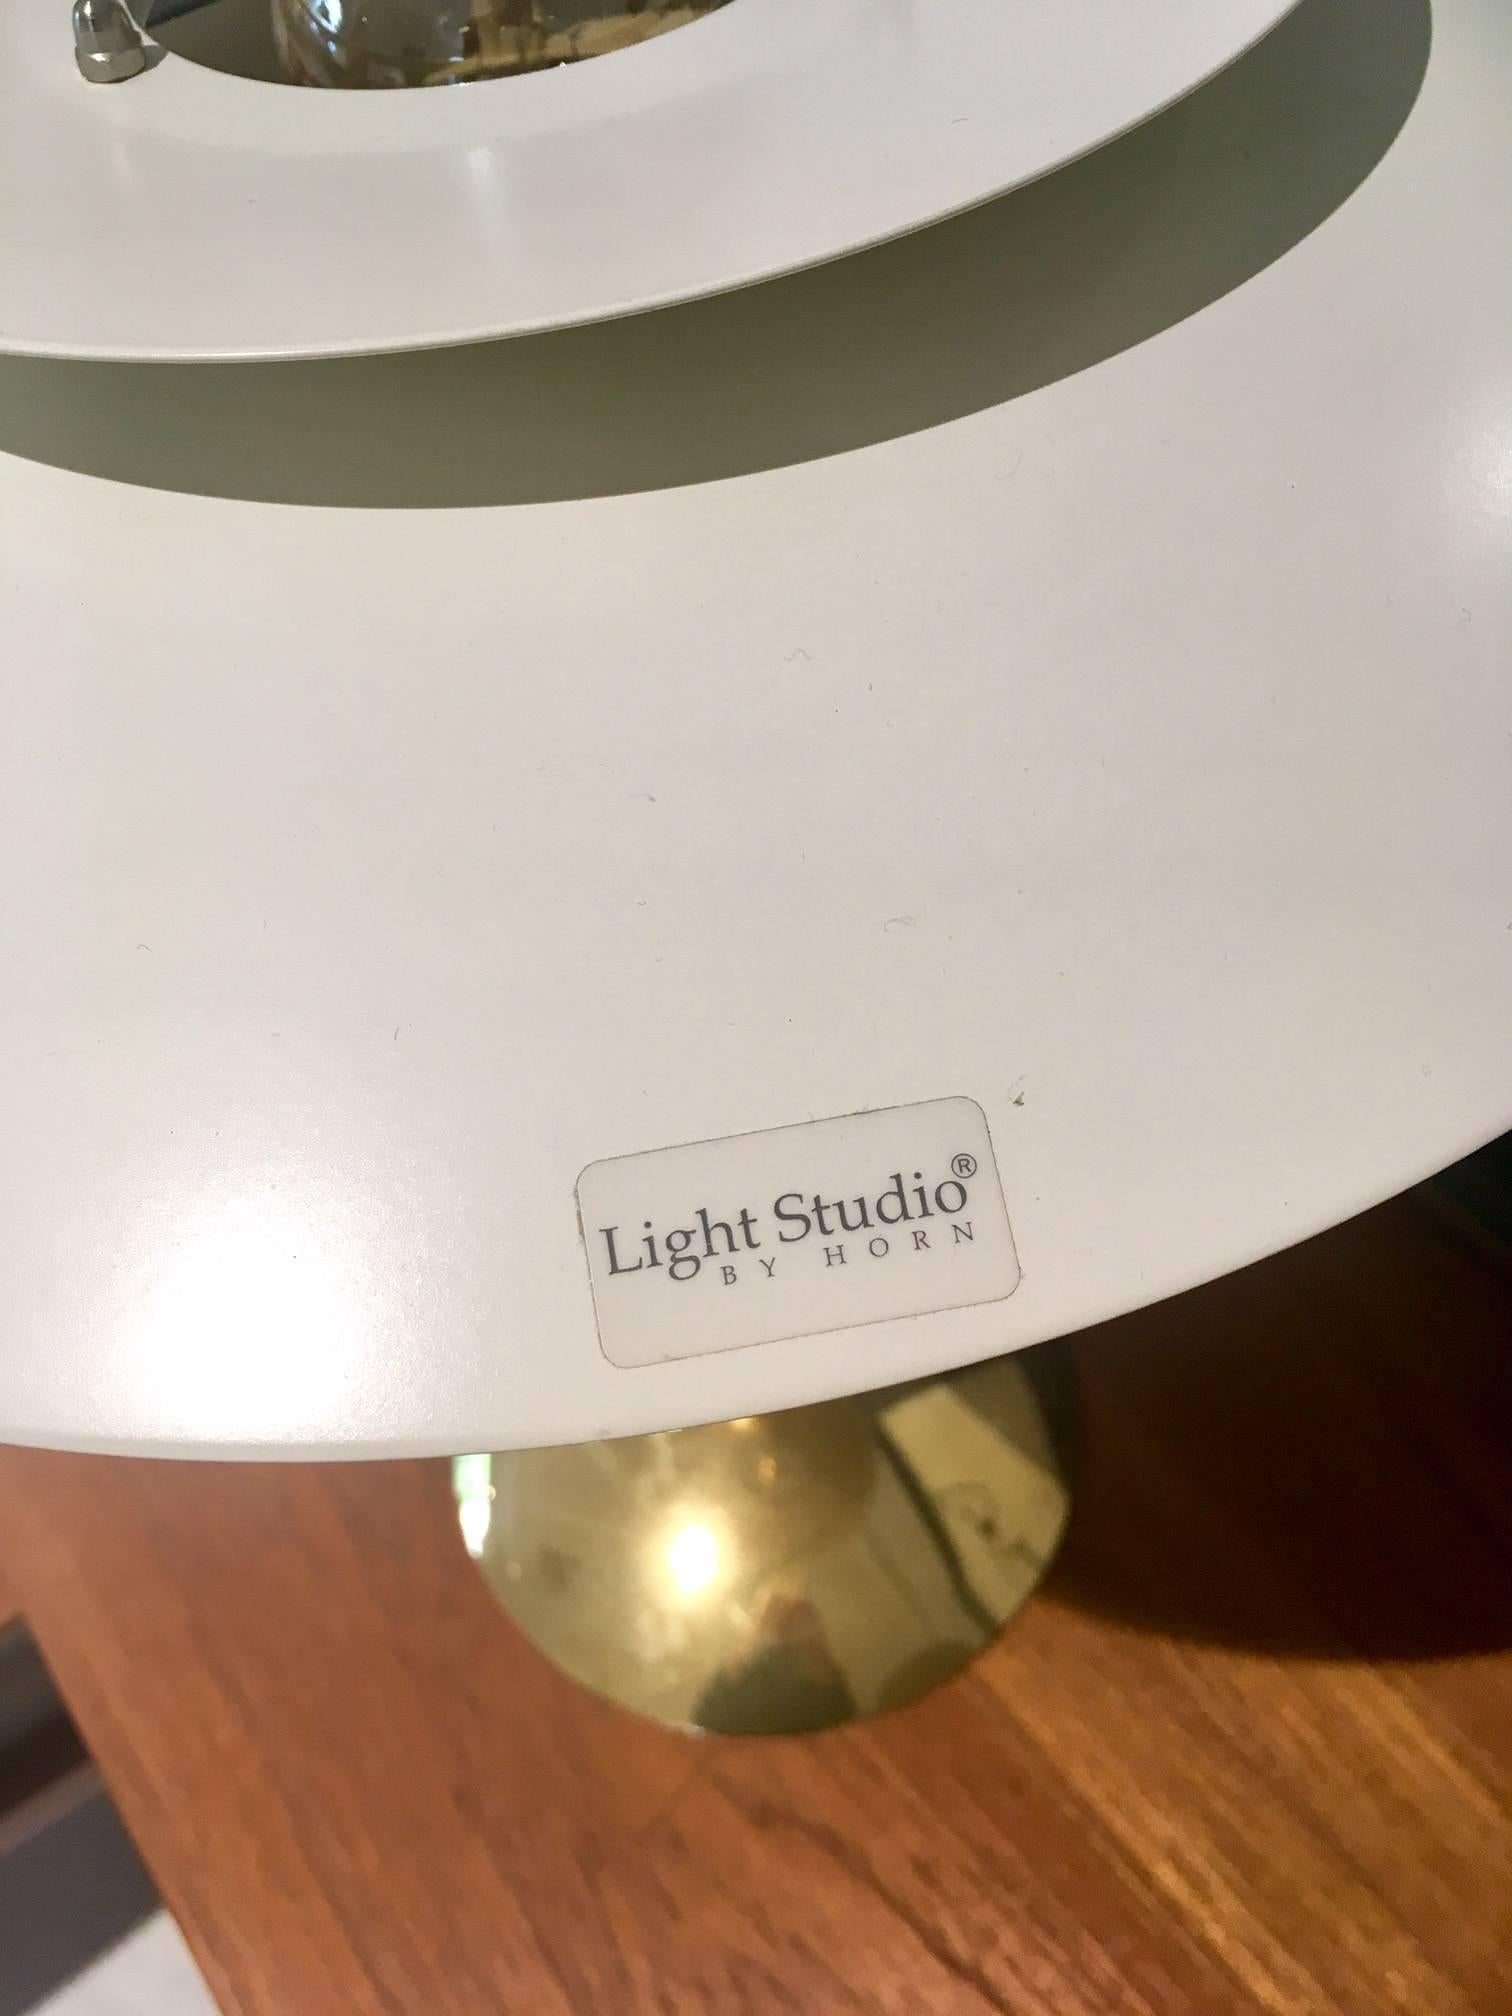 European Pair of White Table Lamps, Model 2687, Light Studio by Horn